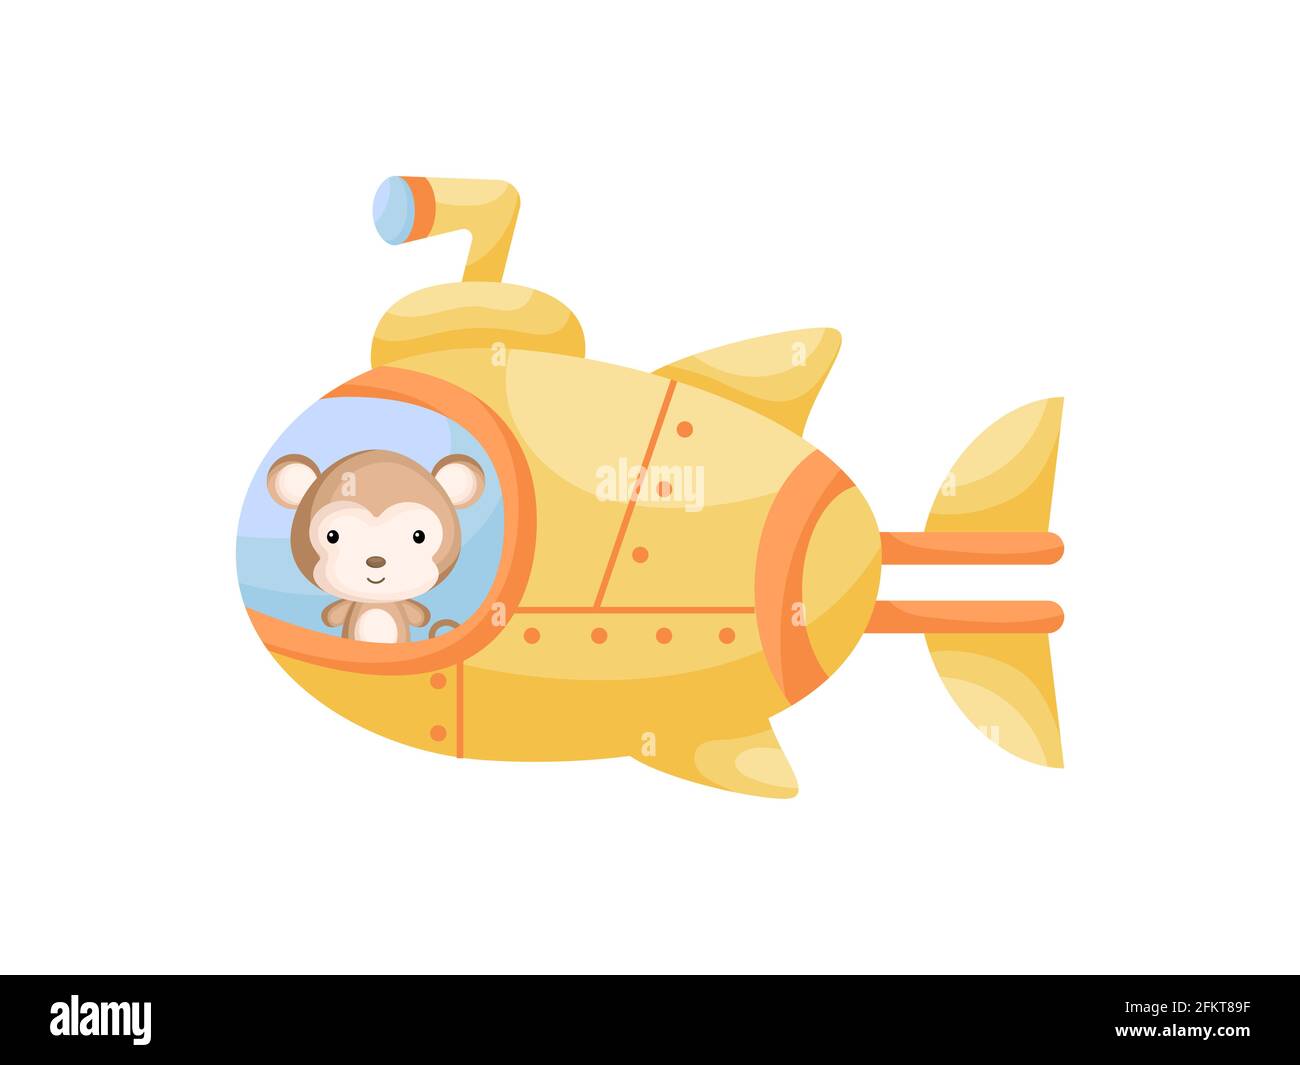 un-petit-singe-mignon-navigue-sur-un-sous-marin-jaune-personnage-de-dessin-anime-pour-les-enfants-livre-album-douche-de-bebe-carte-de-voeux-invitation-de-fete-interieur-de-la-maison-2fkt89f